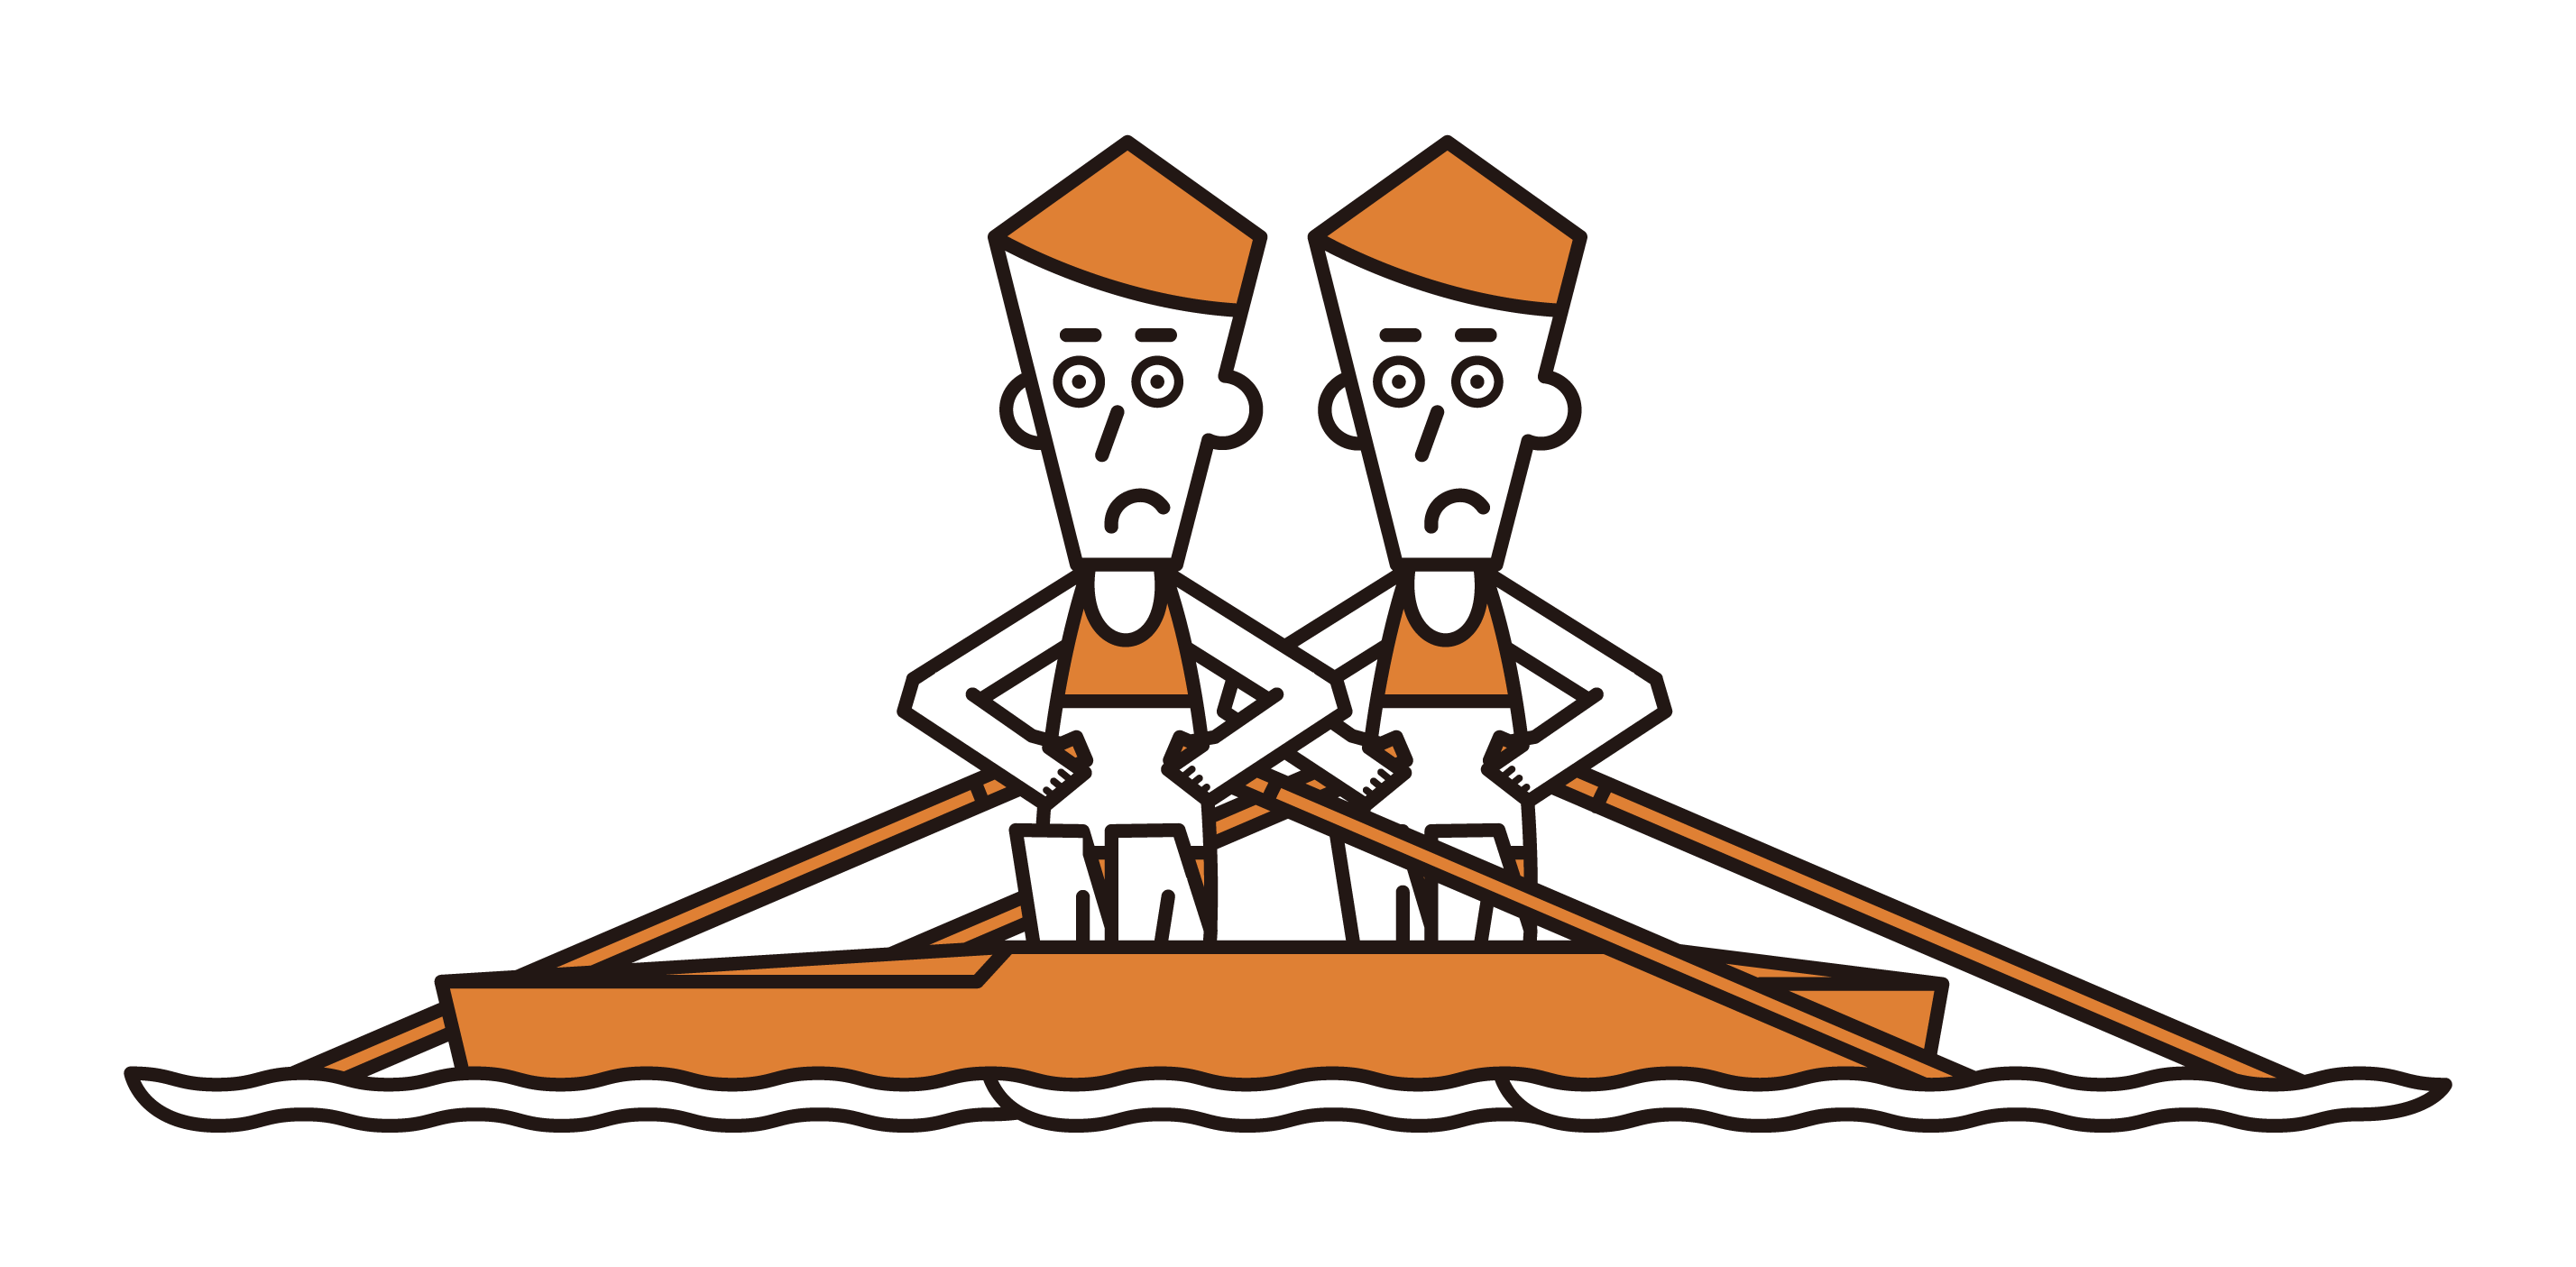 ボート競技（ダブルスカル）の選手たち（男性）のイラスト